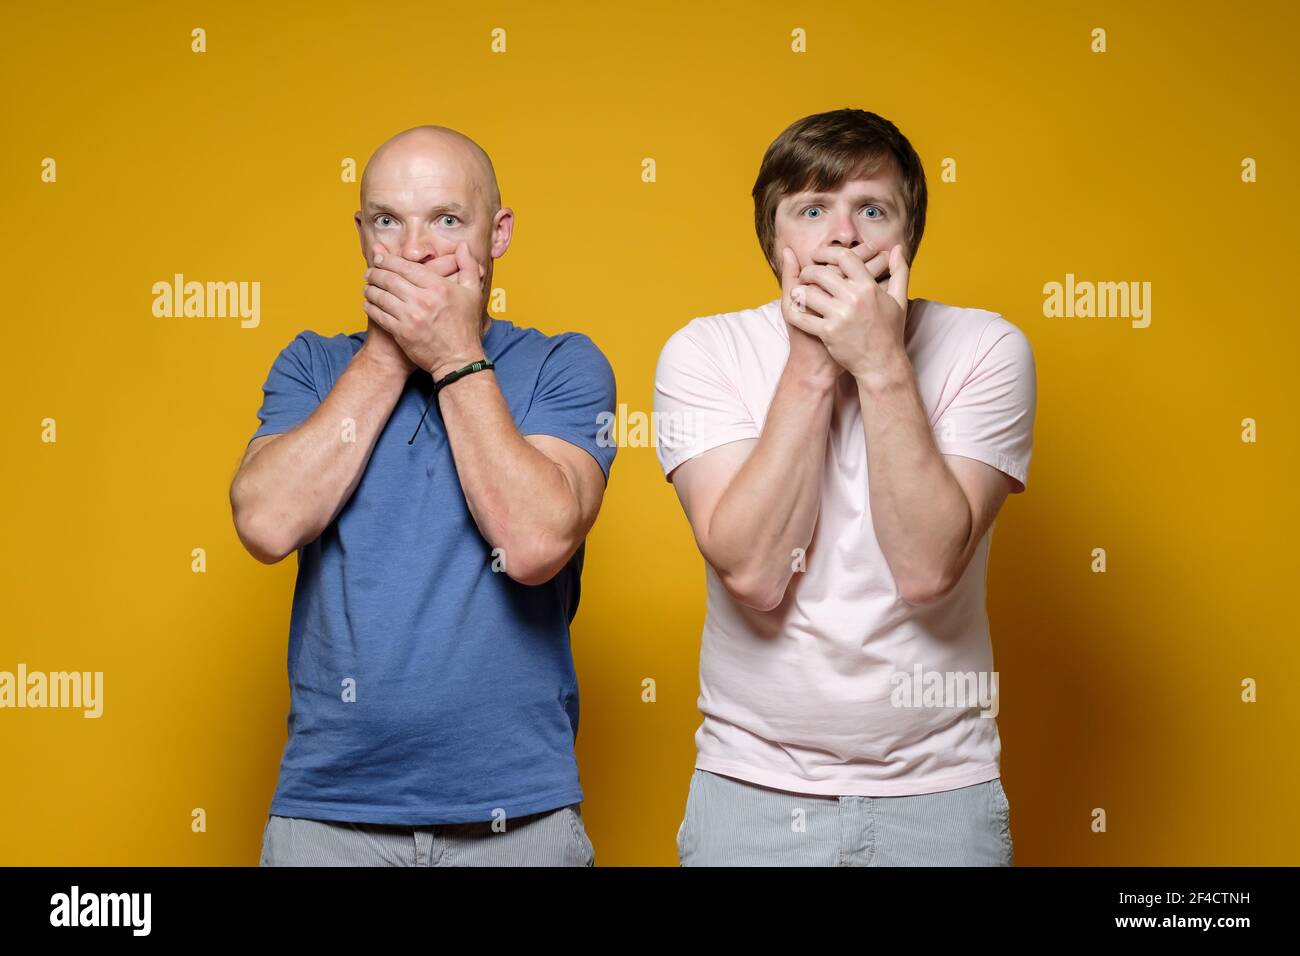 Zwei verängstigte Männer bedeckten ihren Mund mit ihren Händen, sie haben Angst, ein Geheimnis zu erzählen und blicken ängstlich auf die Kamera. Stockfoto